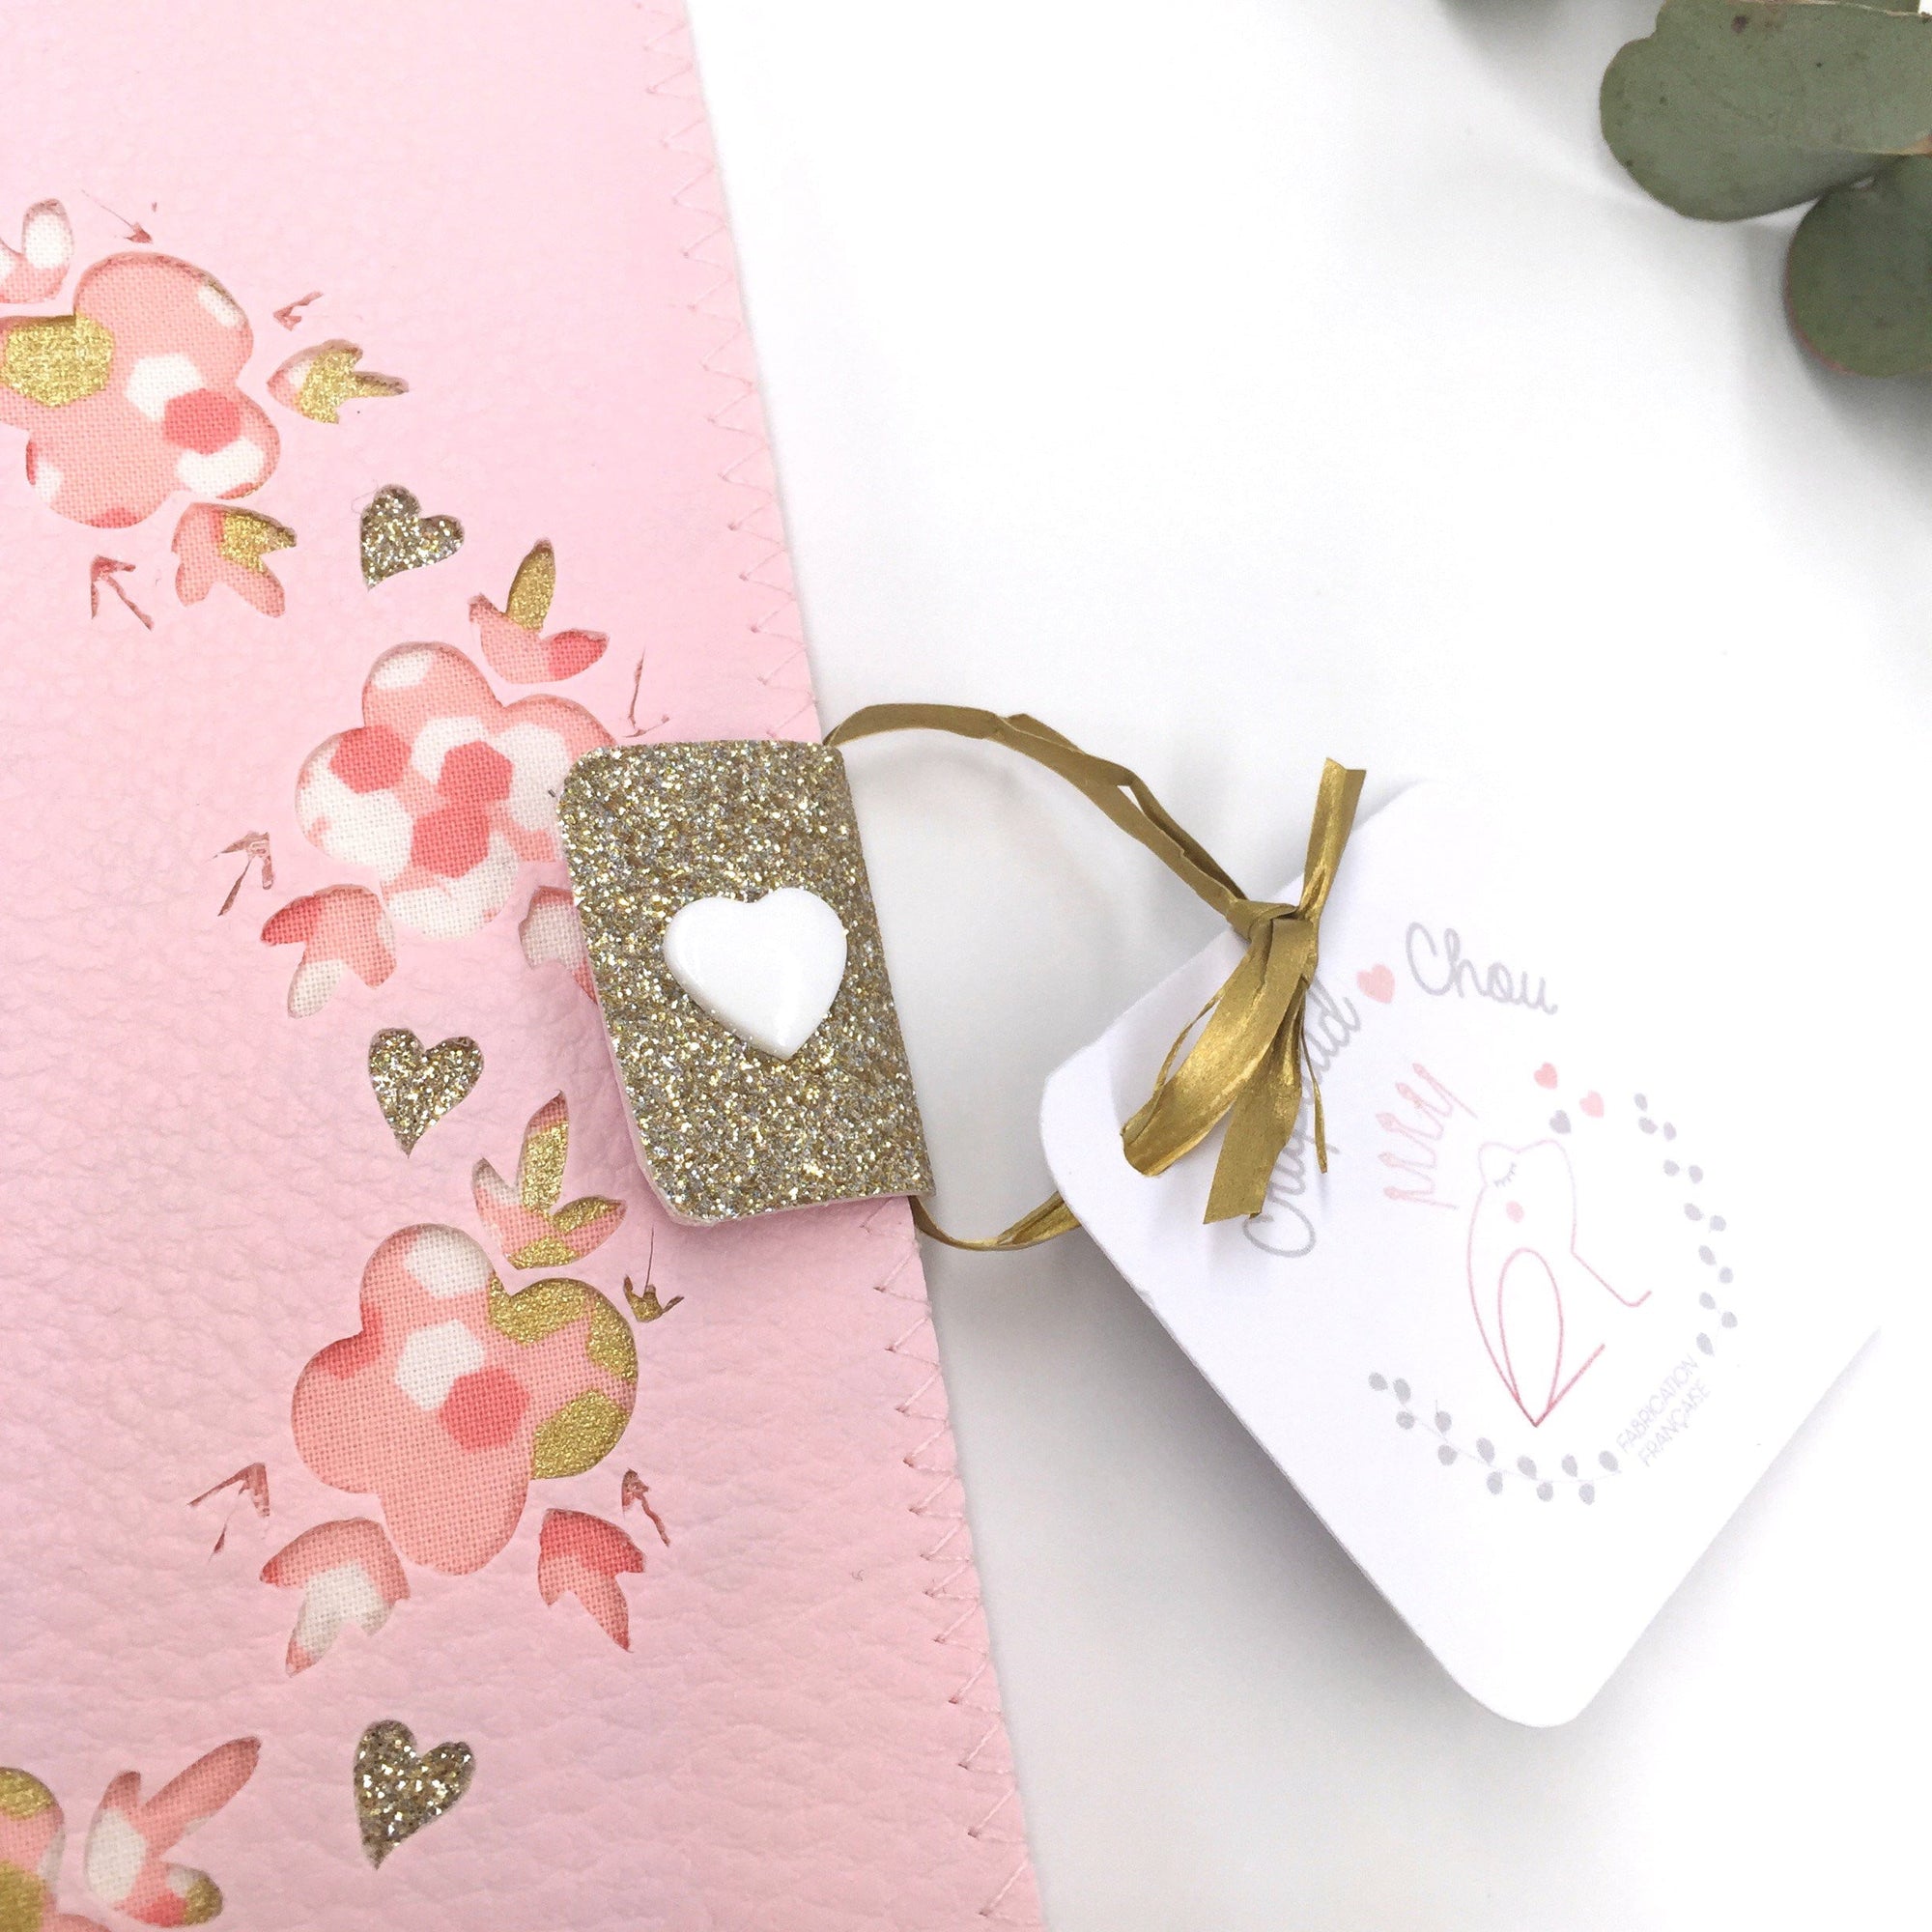 Protège carnet de santé Rose personnalisé couronne de fleurs Miller - Crapaud Chou, le cadeau de naissance original et personnalisé